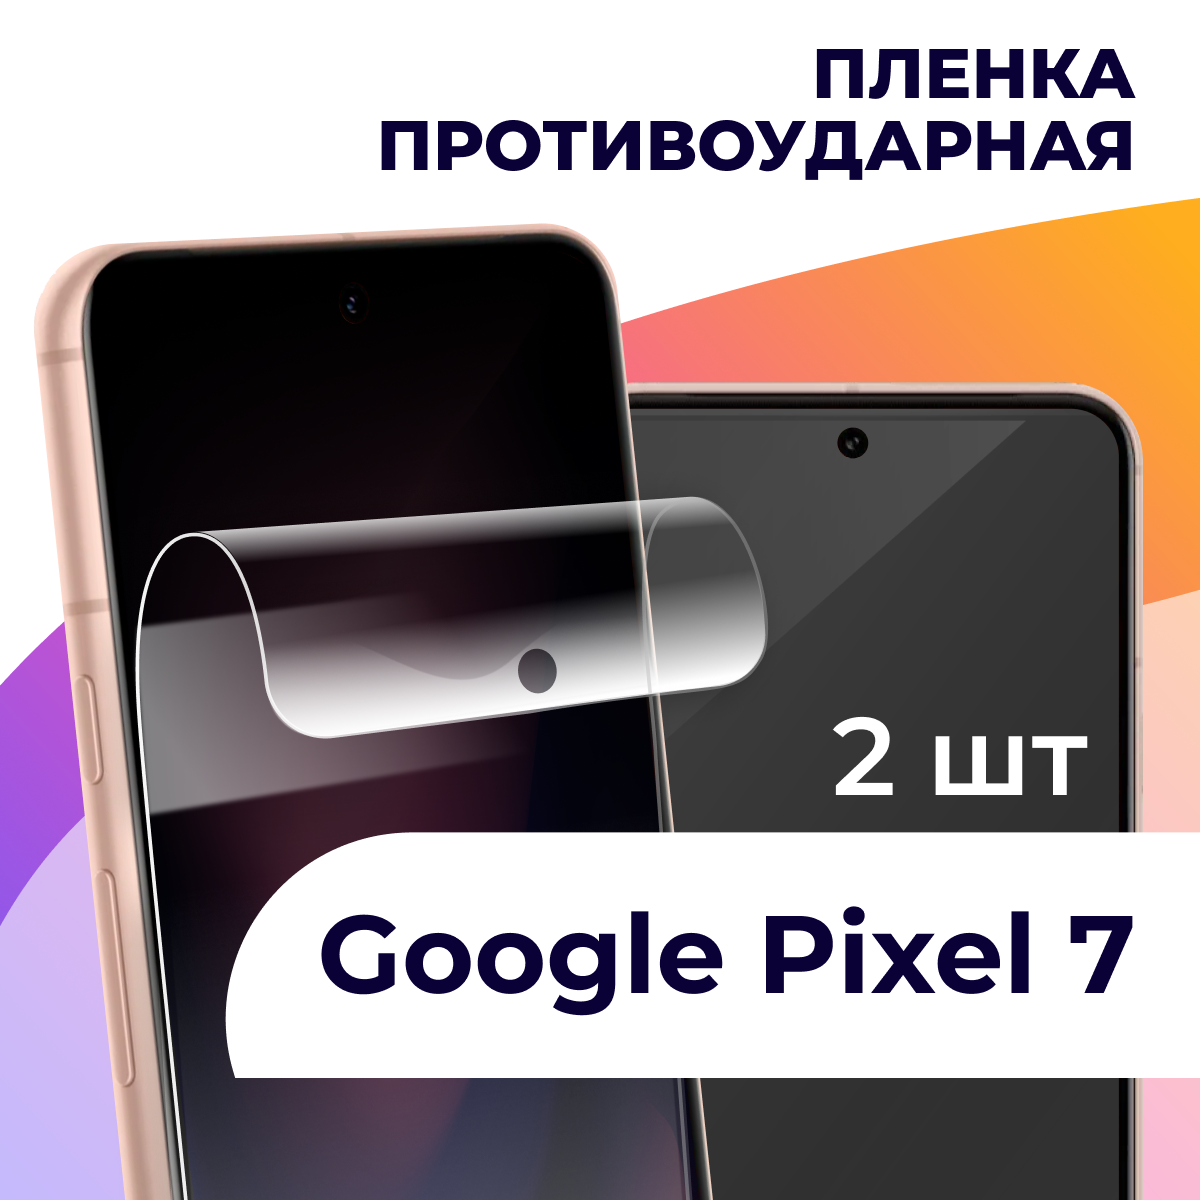 Гидрогелевая пленка для смартфона Google Pixel 7 / Противоударная пленка на телефон Гугл Пиксель 7 / Защитная пленка